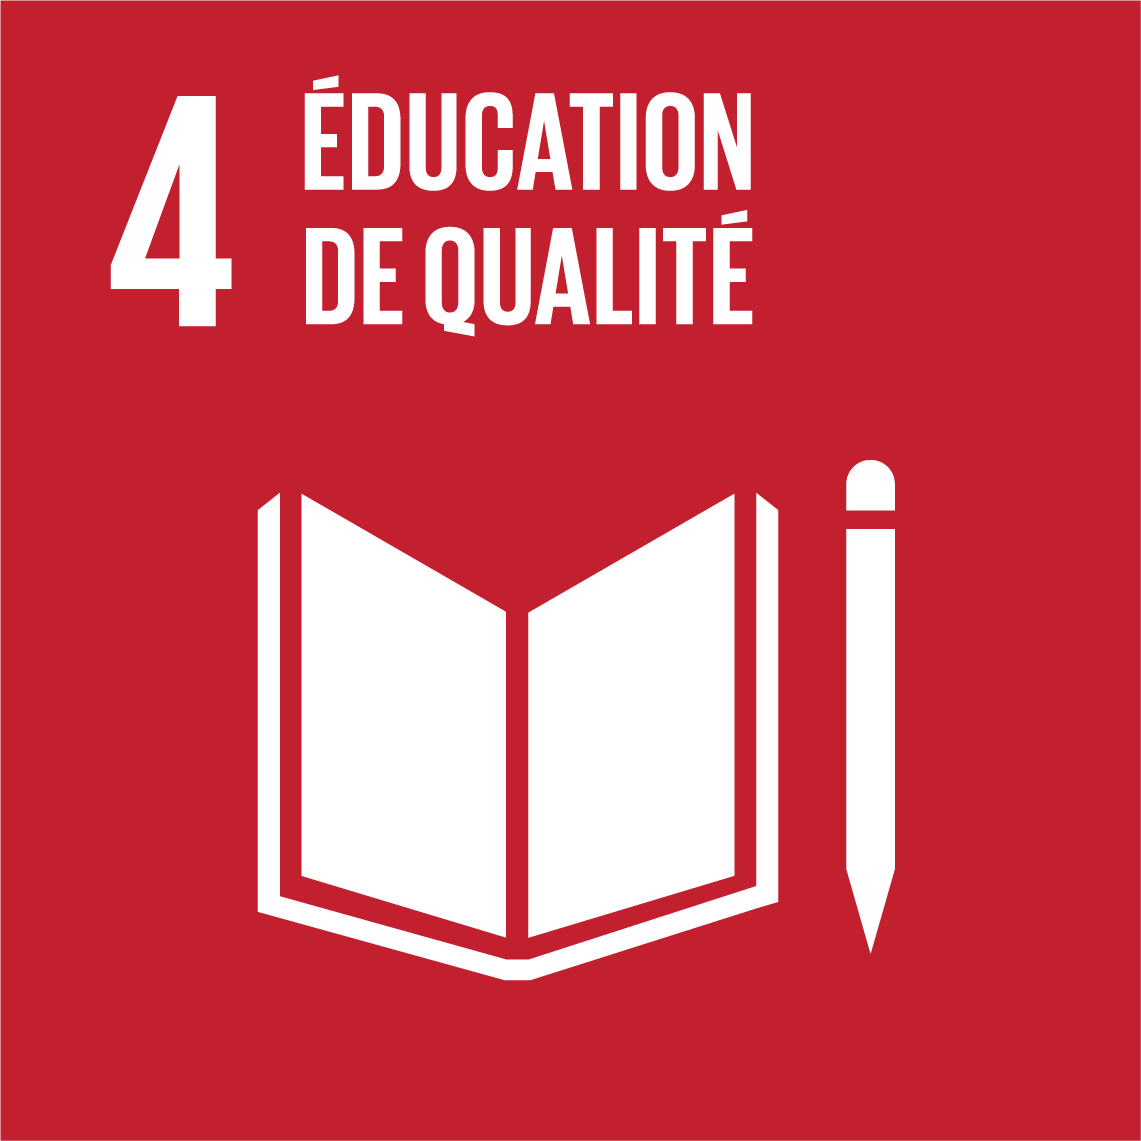 Objectifs de développement durable 4 - Éducation de qualité